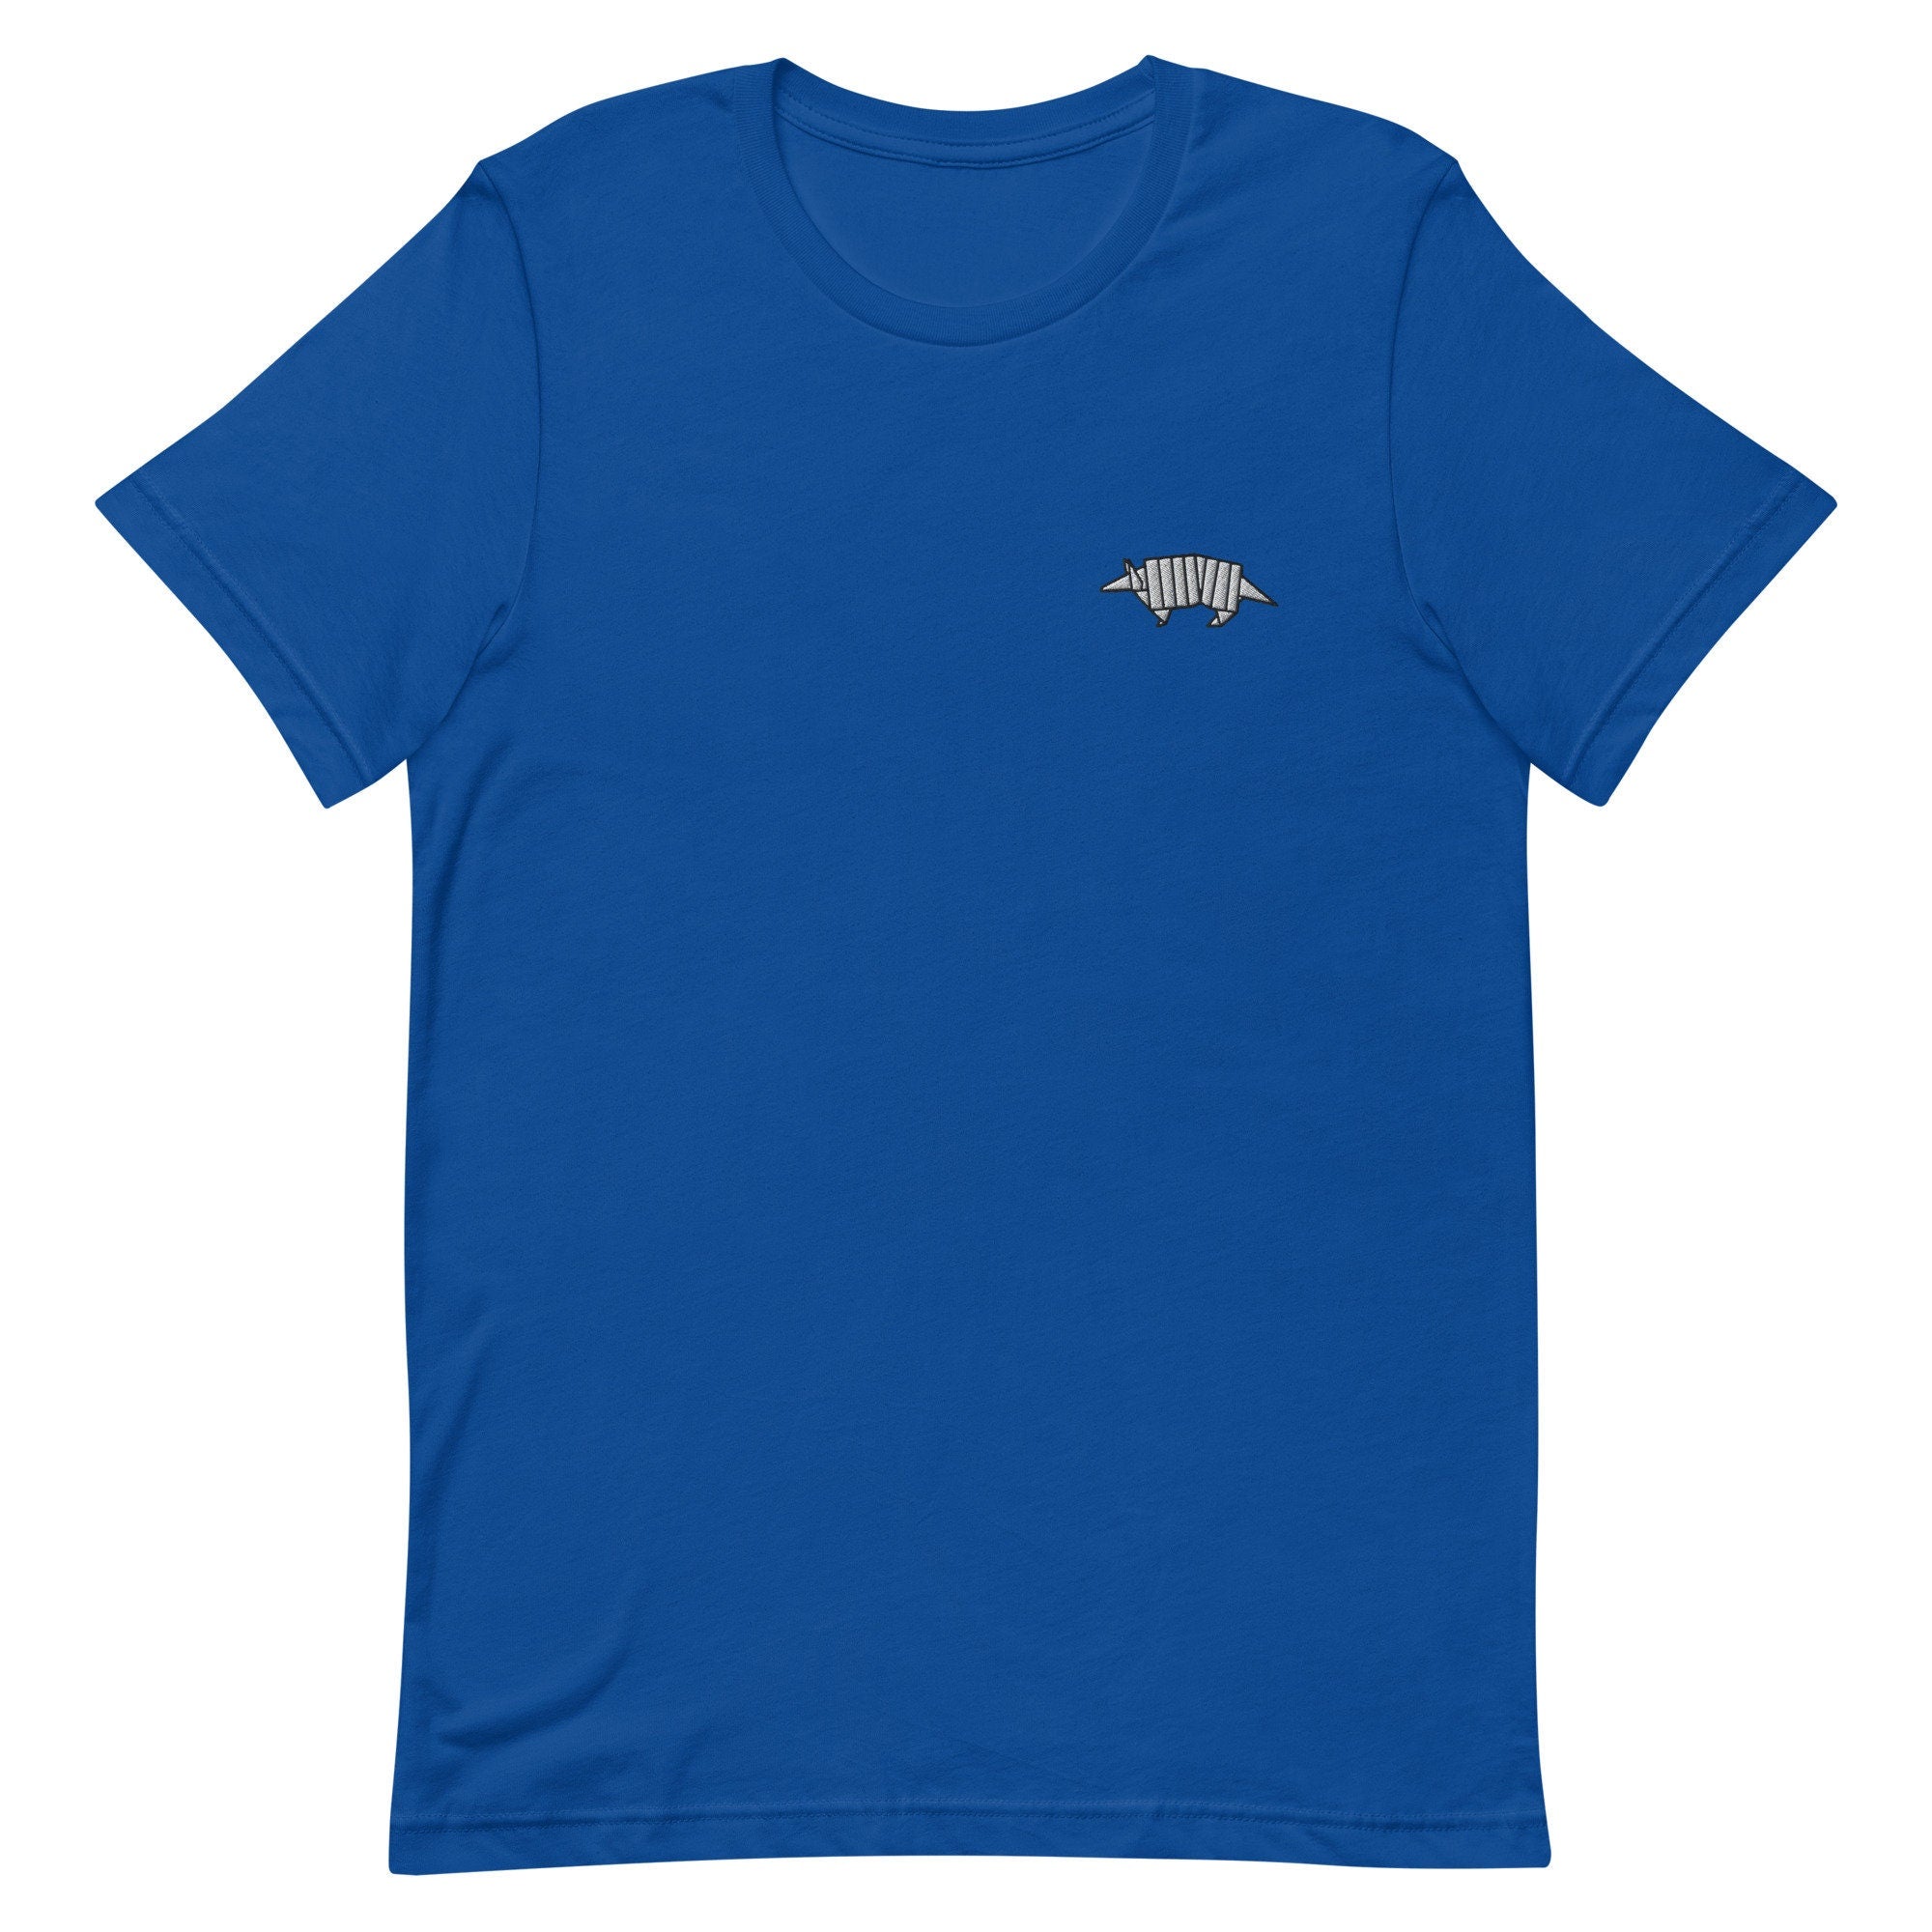 Armadillo Premium Men's T-Shirt, Embroidered Men's T-Shirt Gift for Boyfriend, Men's Short Sleeve Shirt - Multiple Colors